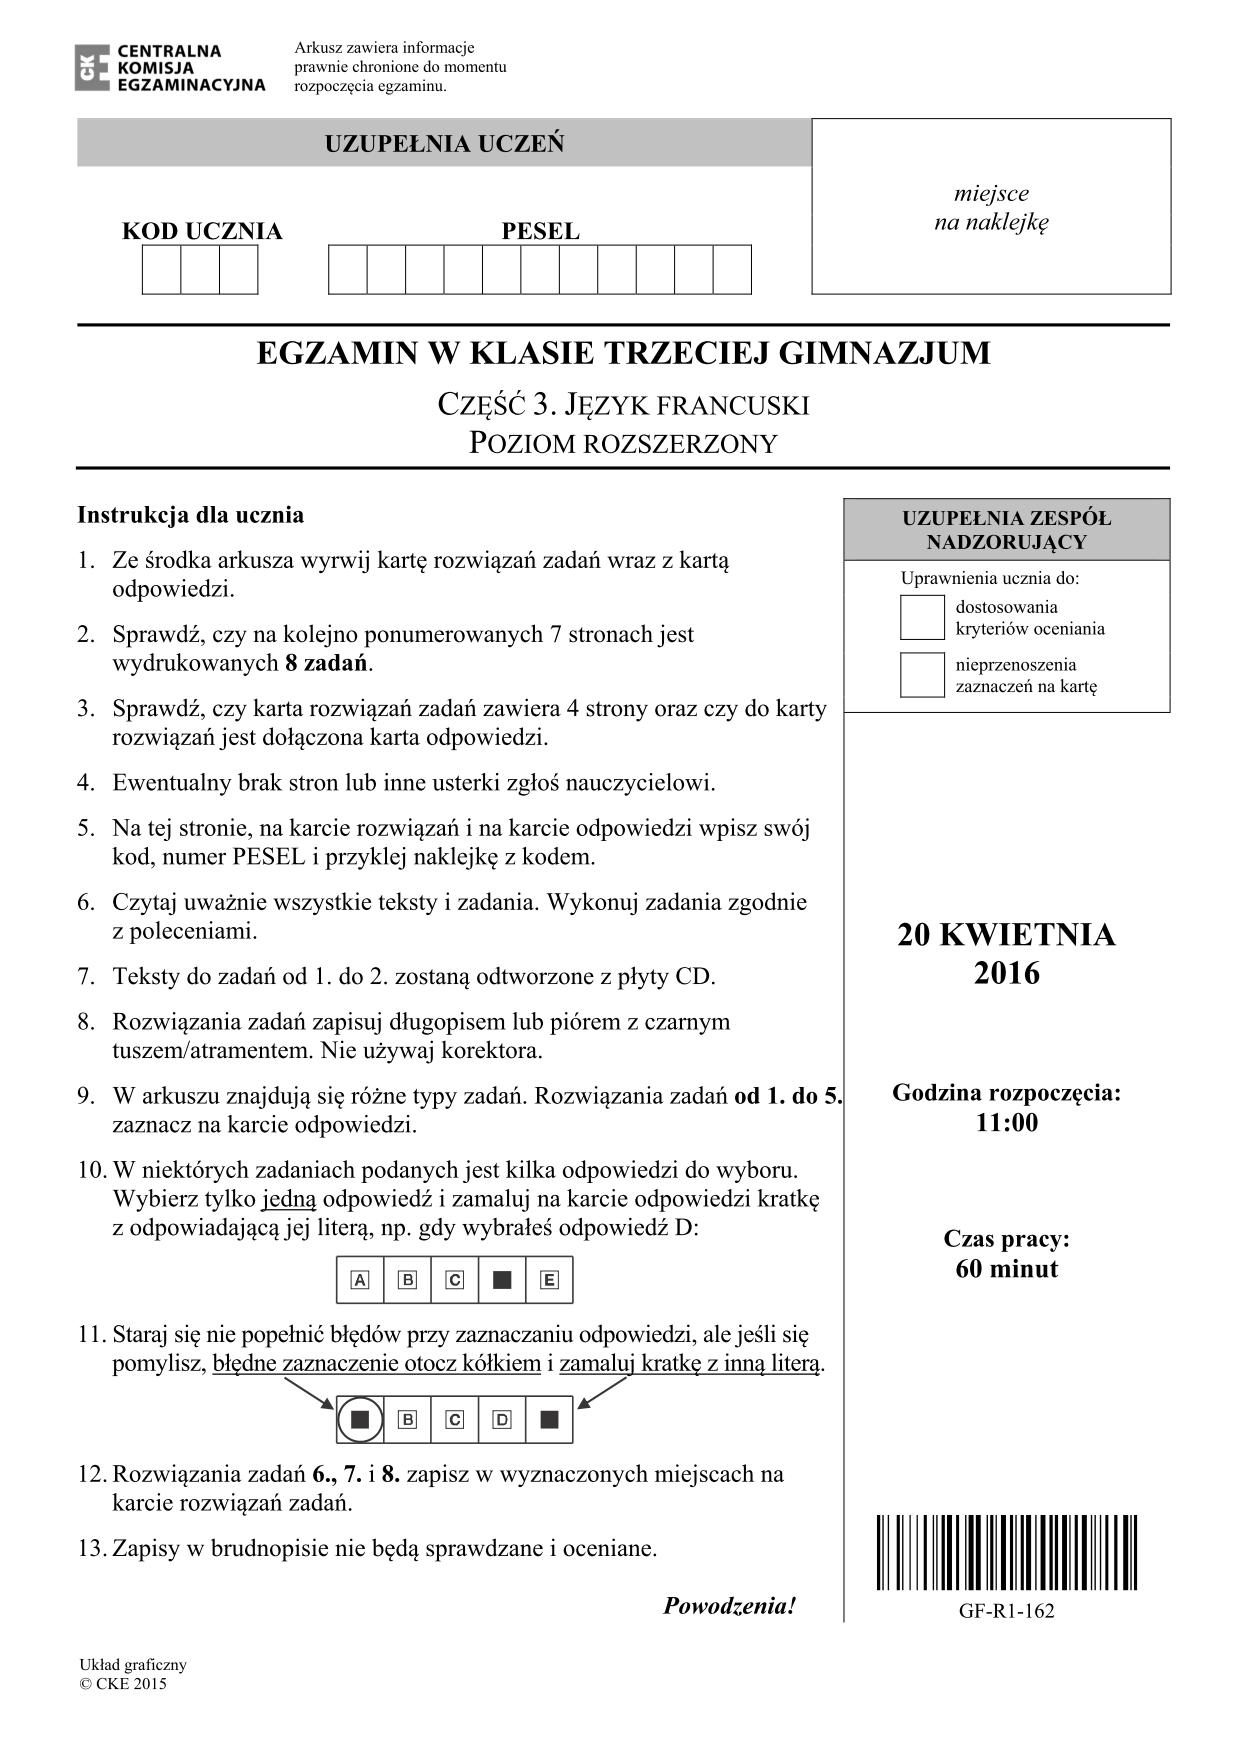 pytania-francuski-poziom-rozszerzony-egzamin-gimnazjalny-2016 - 1